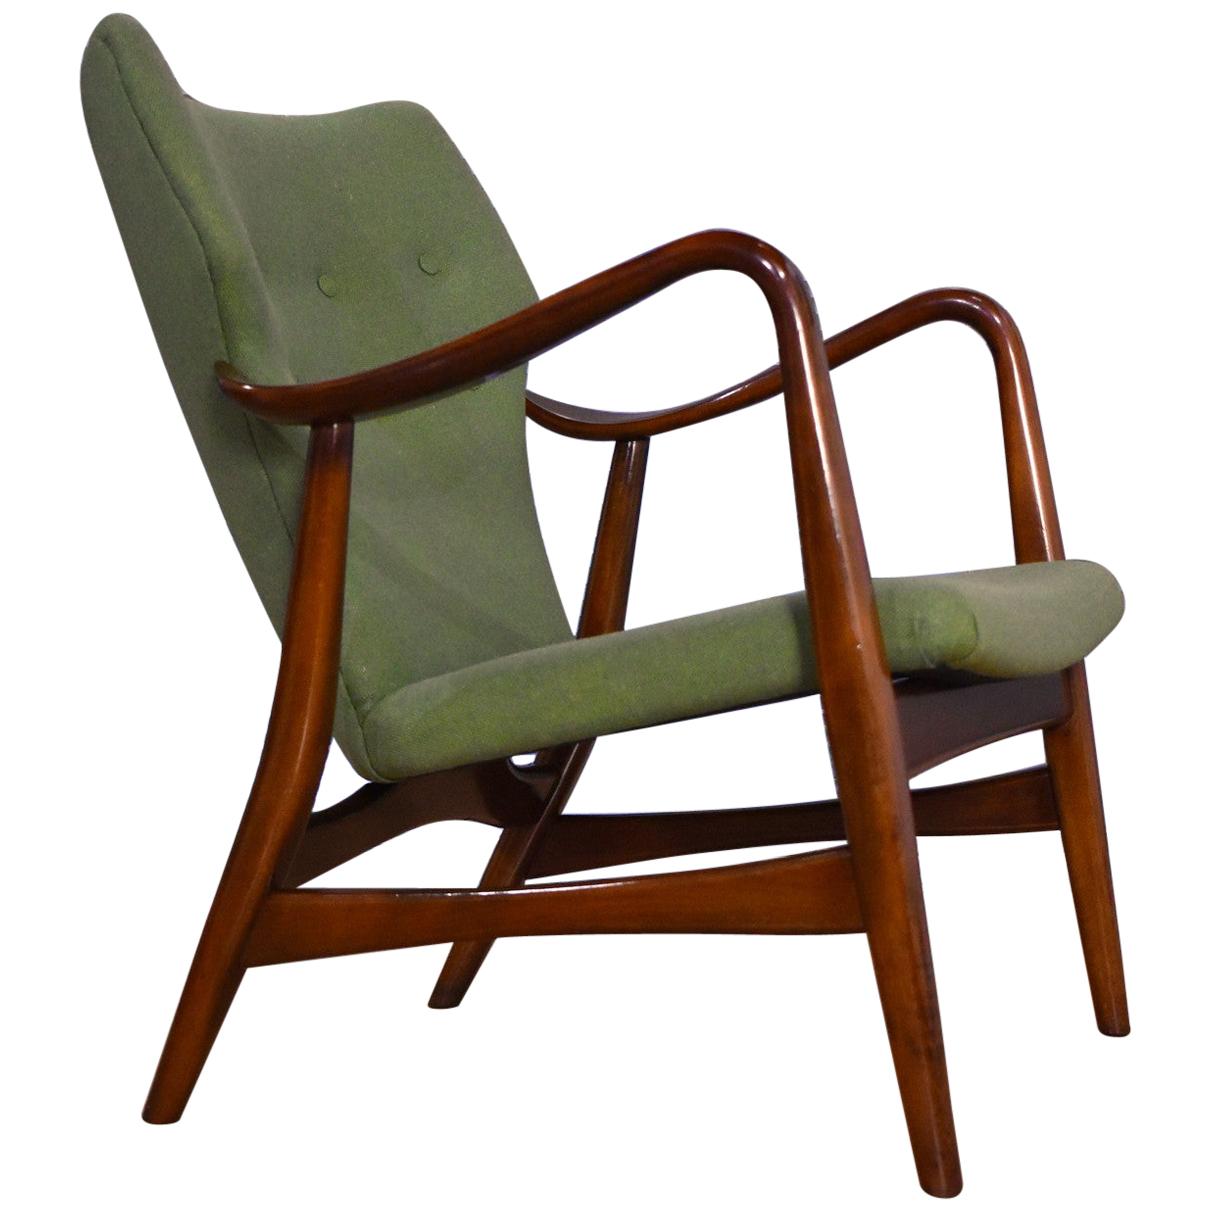 Madsen & Schubell Lounge Chair